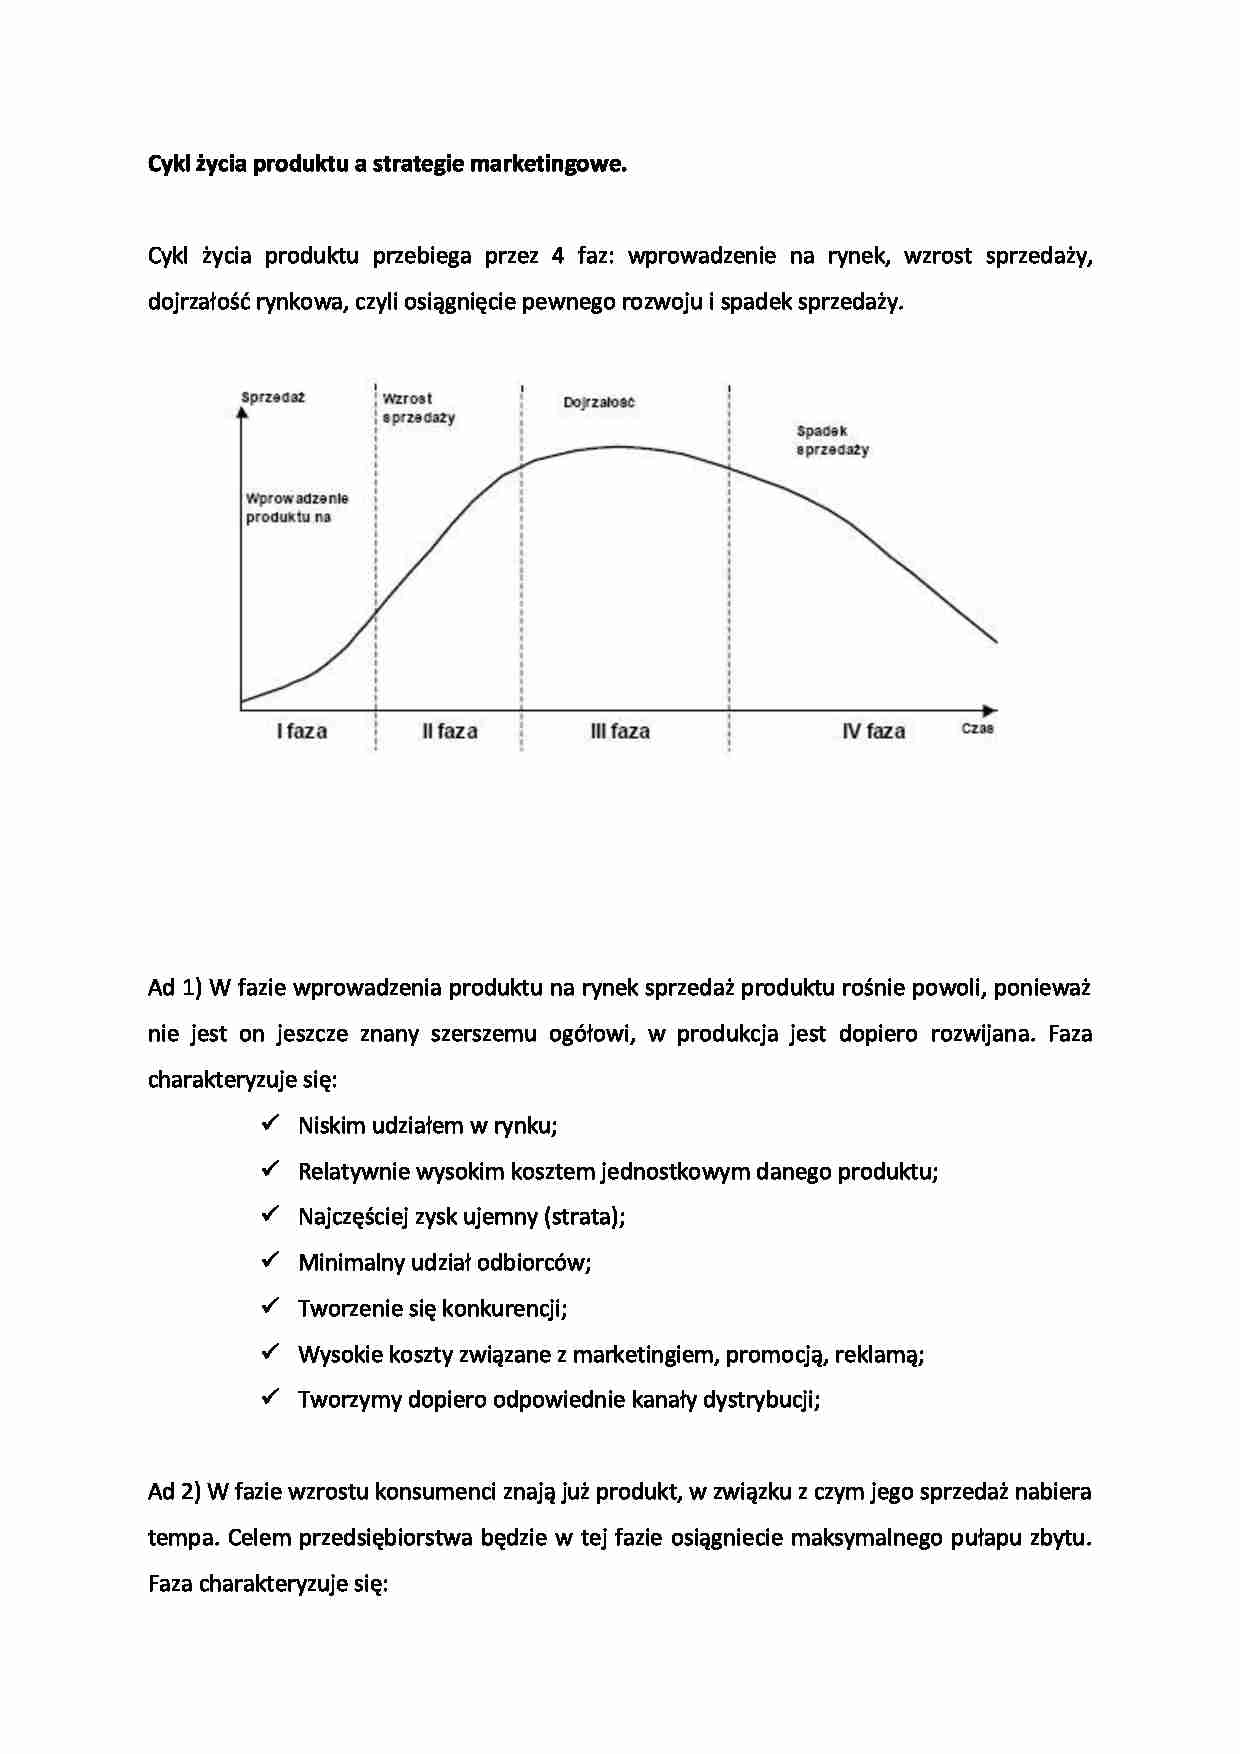 Cykl życia produktu a strategie marketingowe - Marketing - strona 1